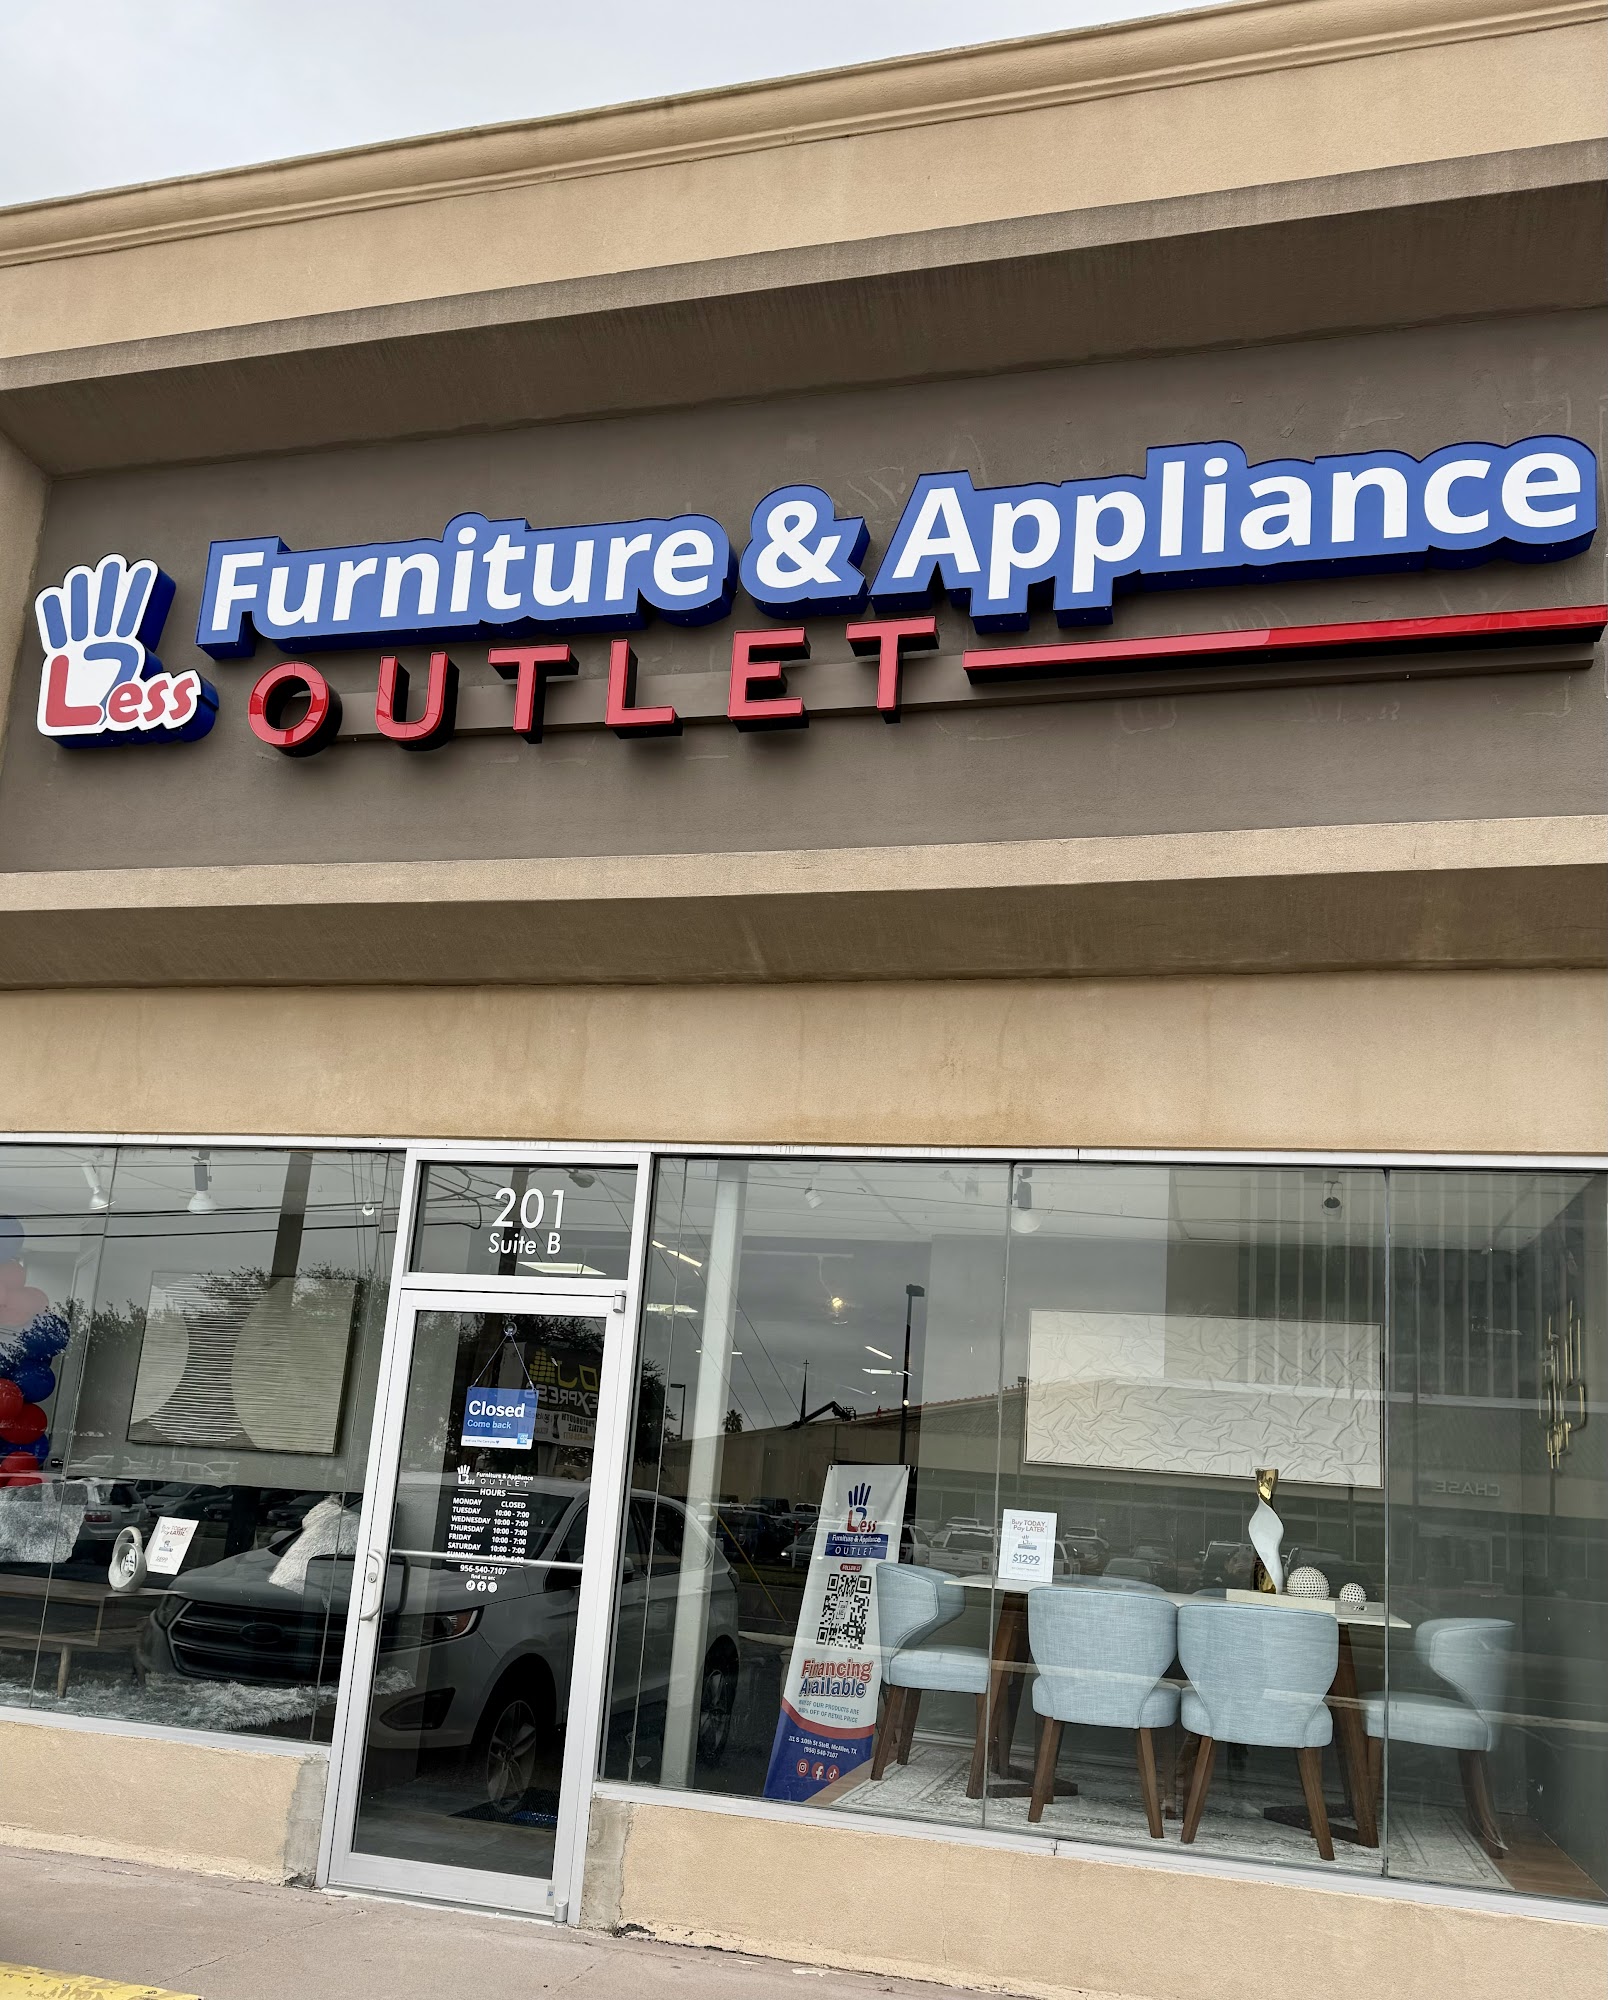 4 Less Furniture & Appliance(Outlet)McAllen, TX